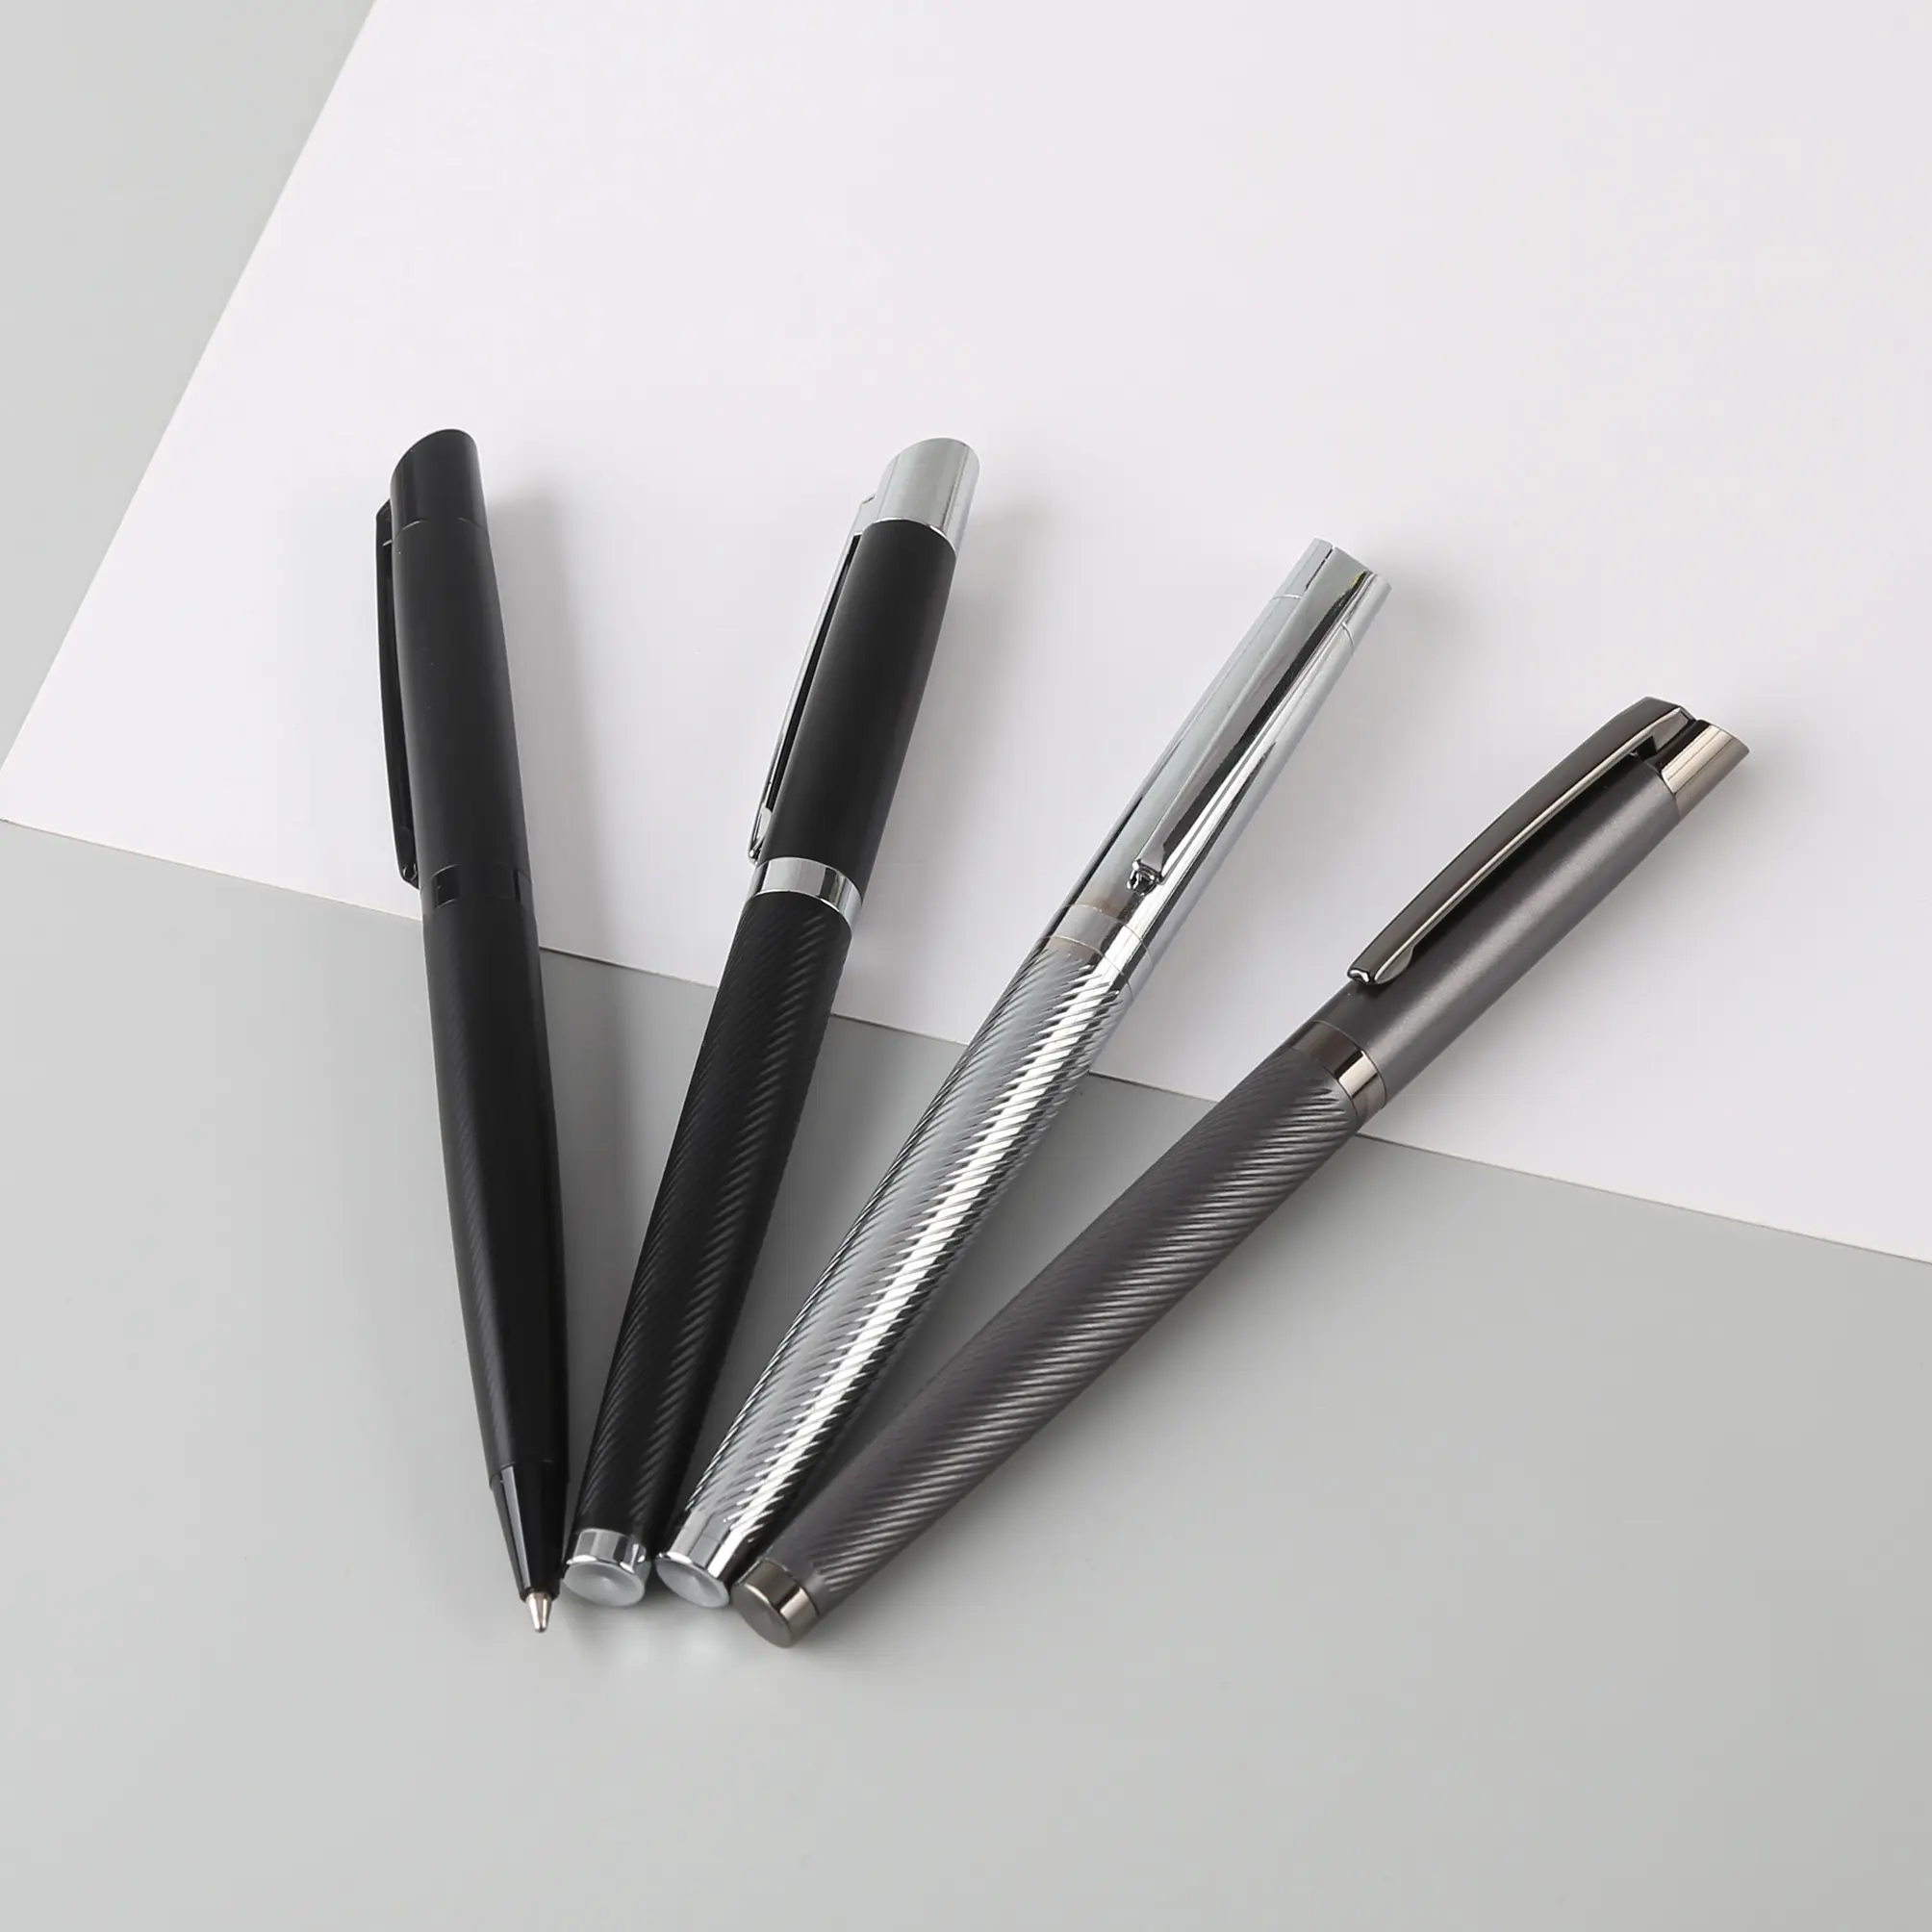 TTX नई caneta लक्जरी उत्कीर्णन मैट काले धातु बॉल पेन उपहार बक्से customisable लोगो विज्ञापन धातुई जेल प्रचार कलम